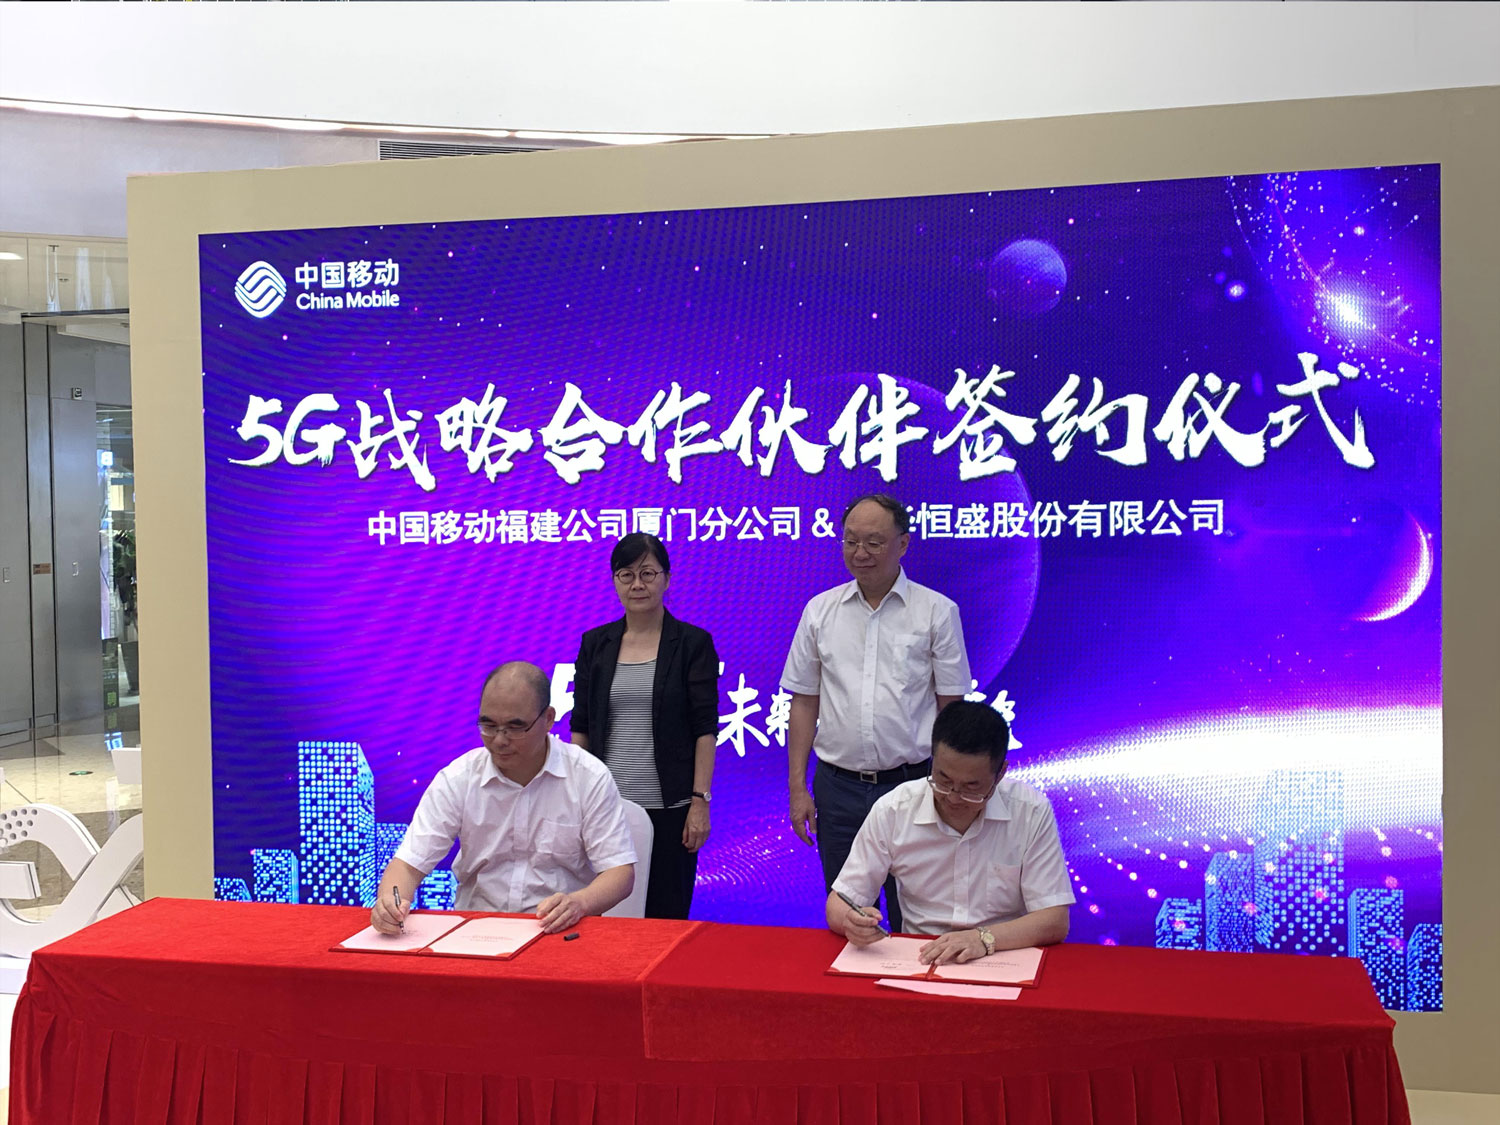 科华数据与厦门移动签署5G新技术应用战略合作协议 加速边缘计算应用发展